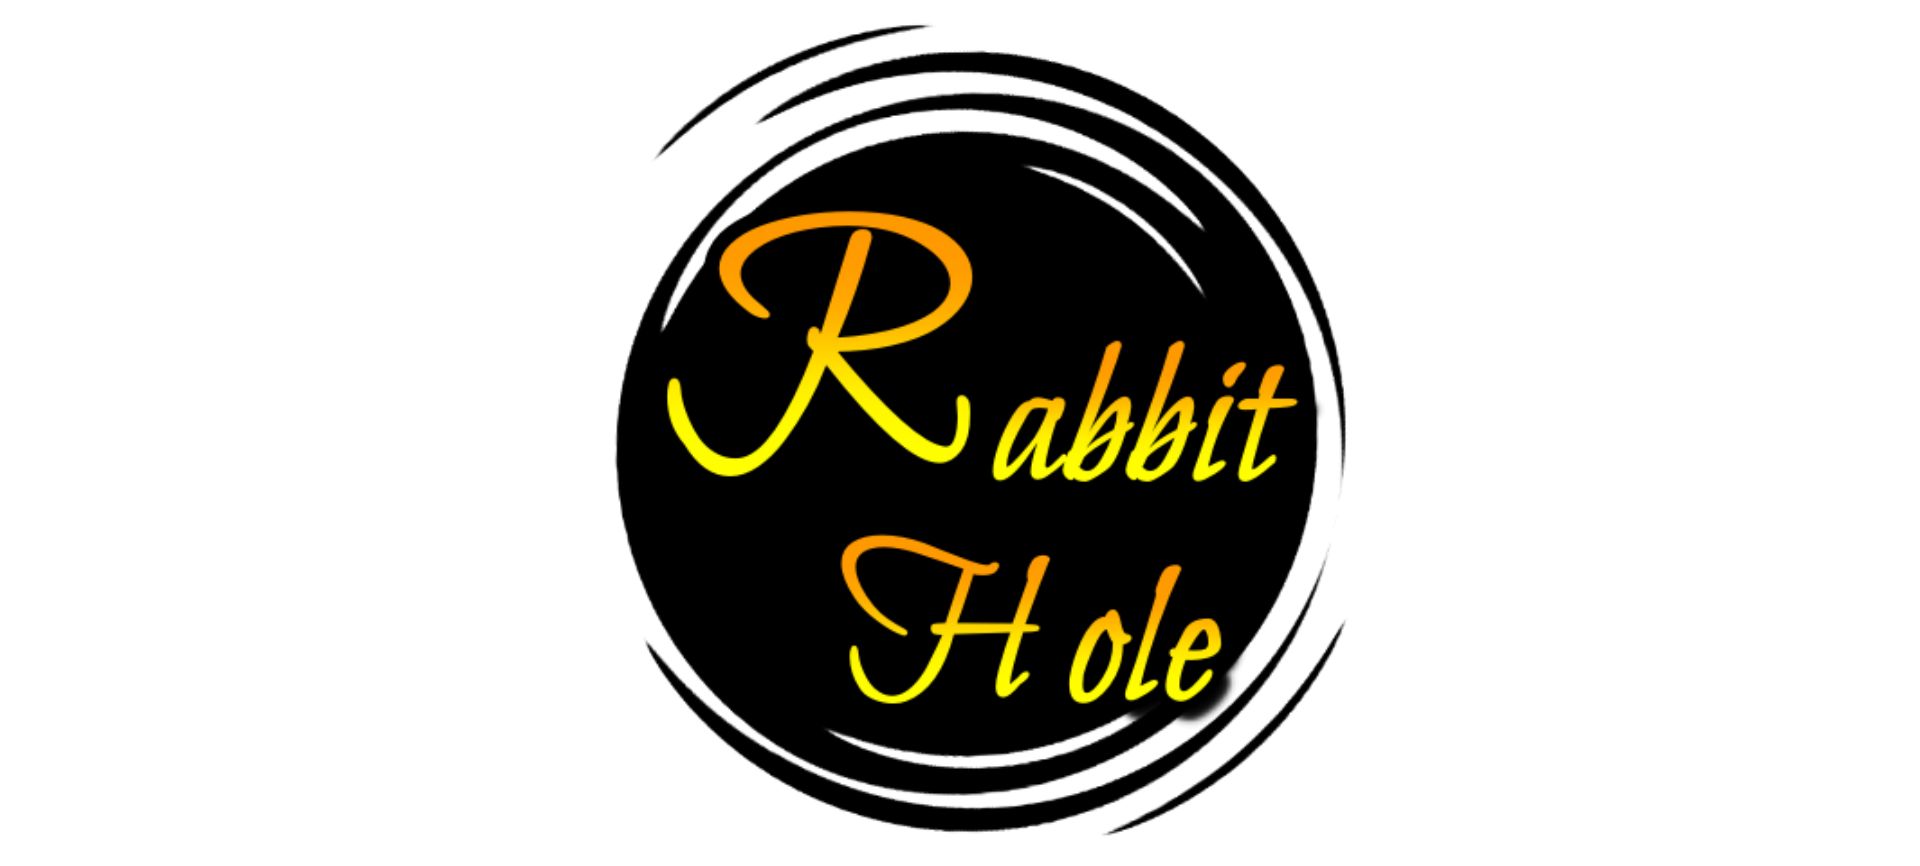 Rabbit hole em português